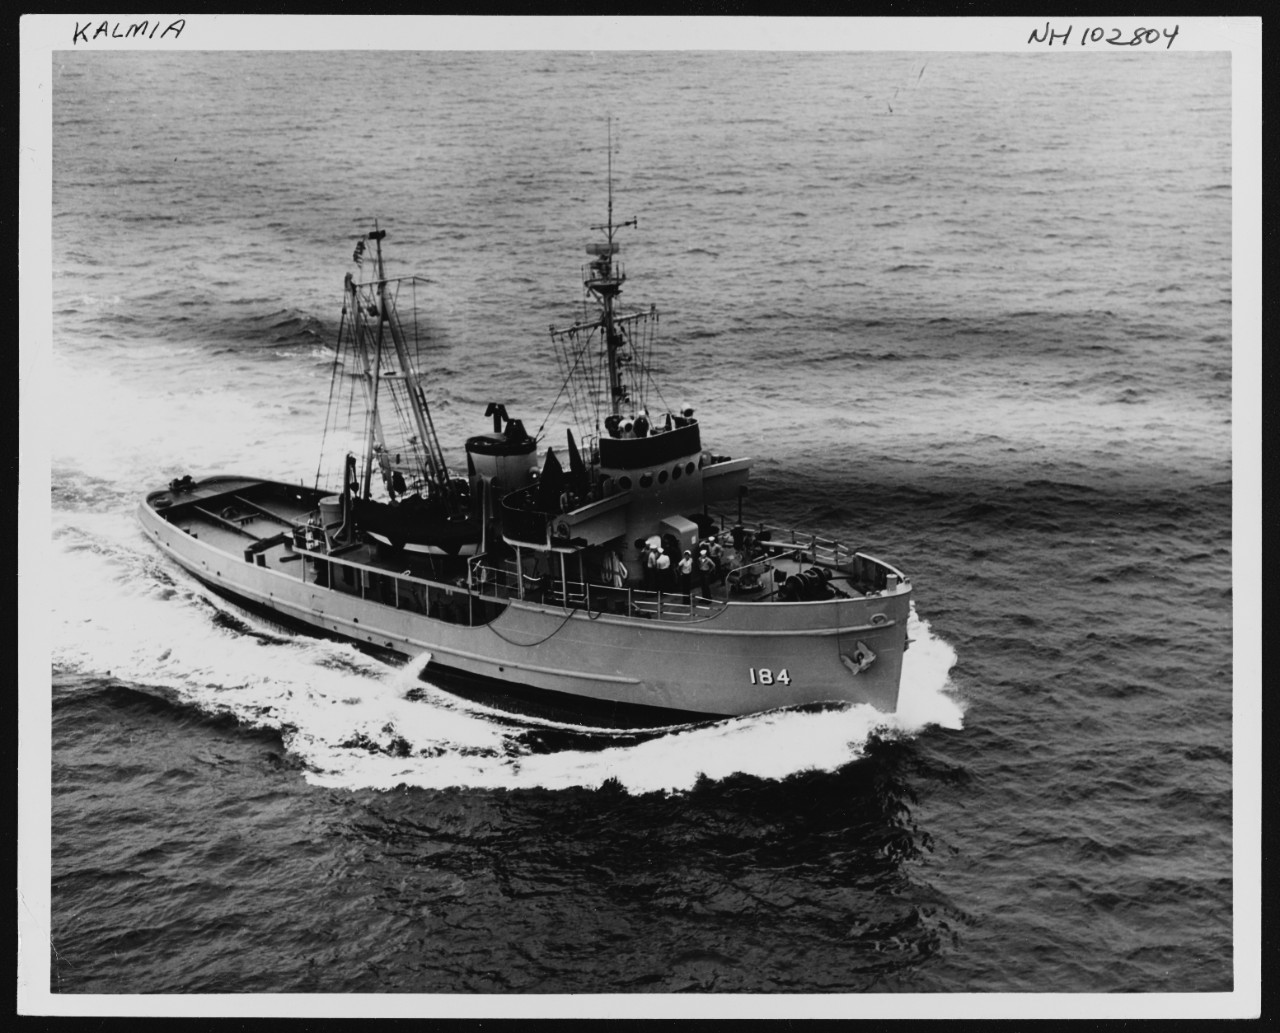 Photo #: NH 102804  USS Kalmia